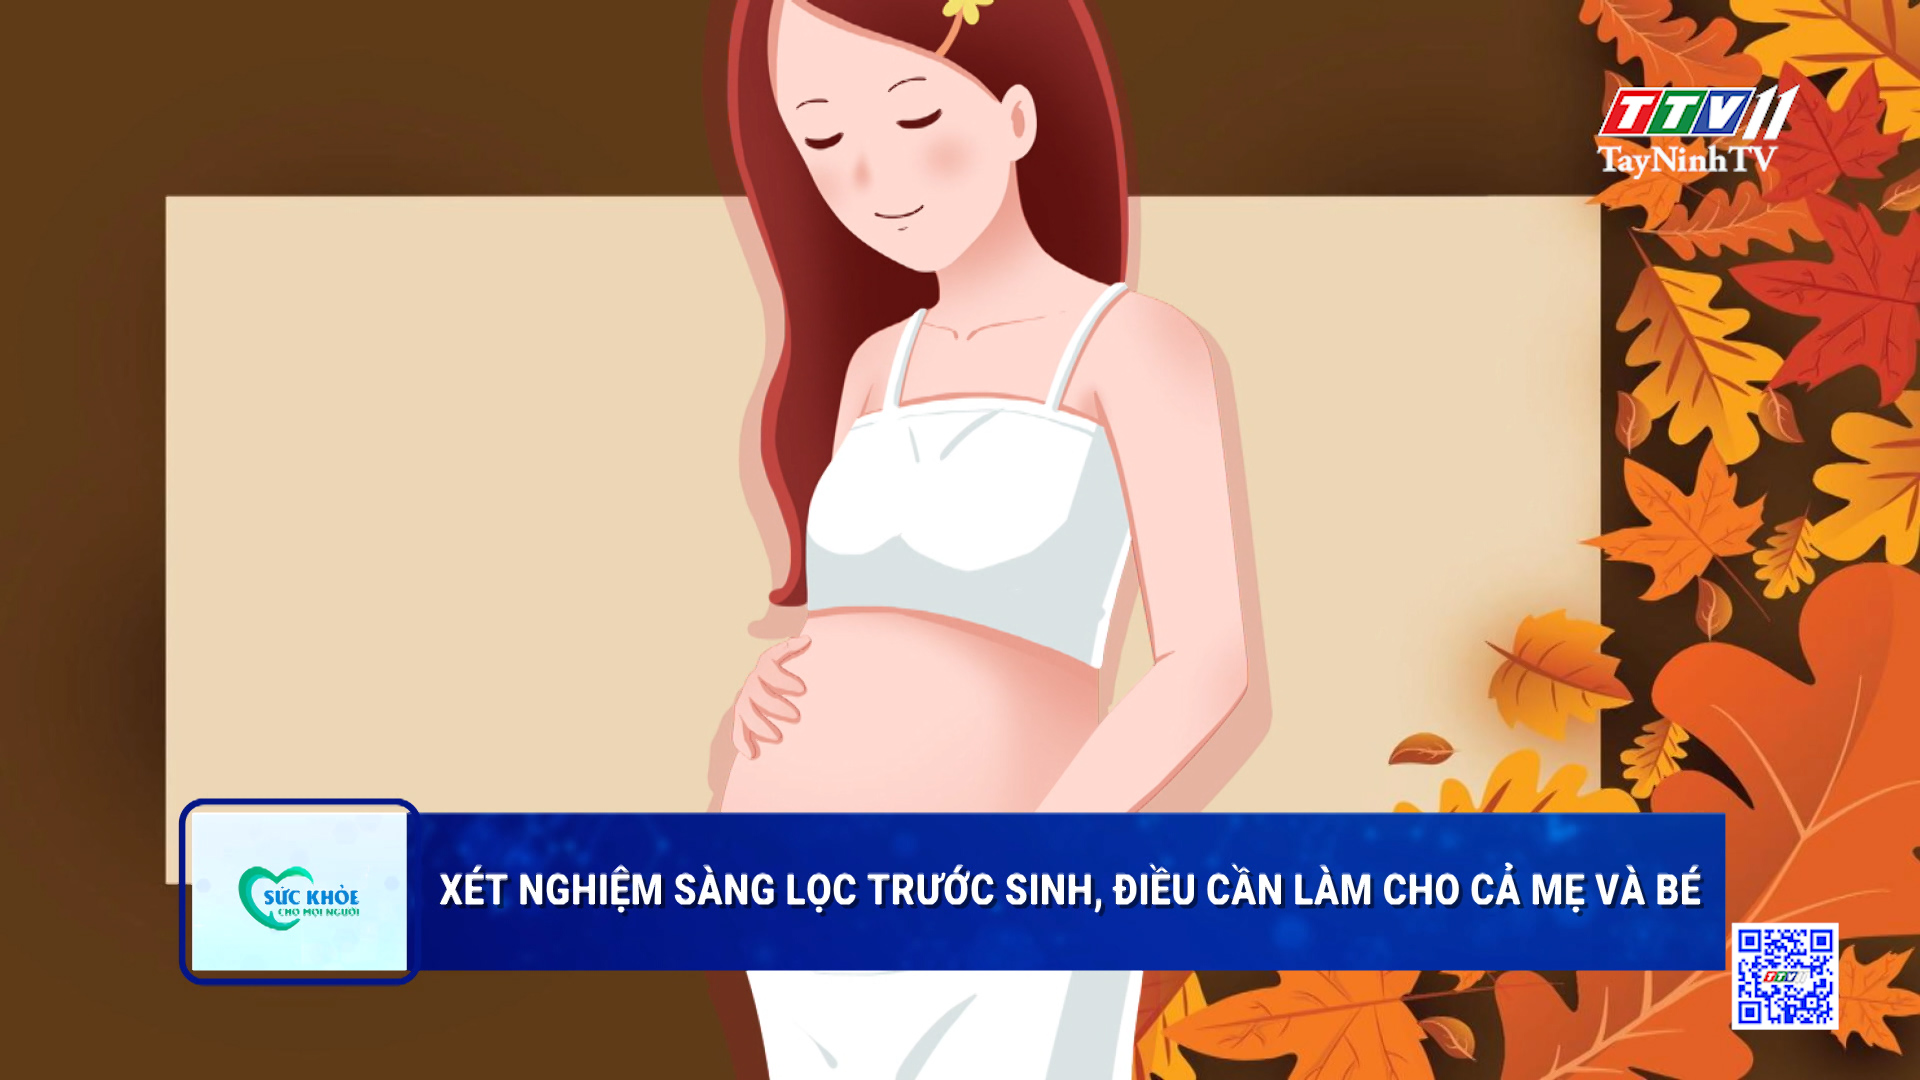 Xét nghiệm sàng lọc trước sinh, điều cần làm cho cả mẹ và bé | Sức khỏe cho mọi người | TayNinhTV